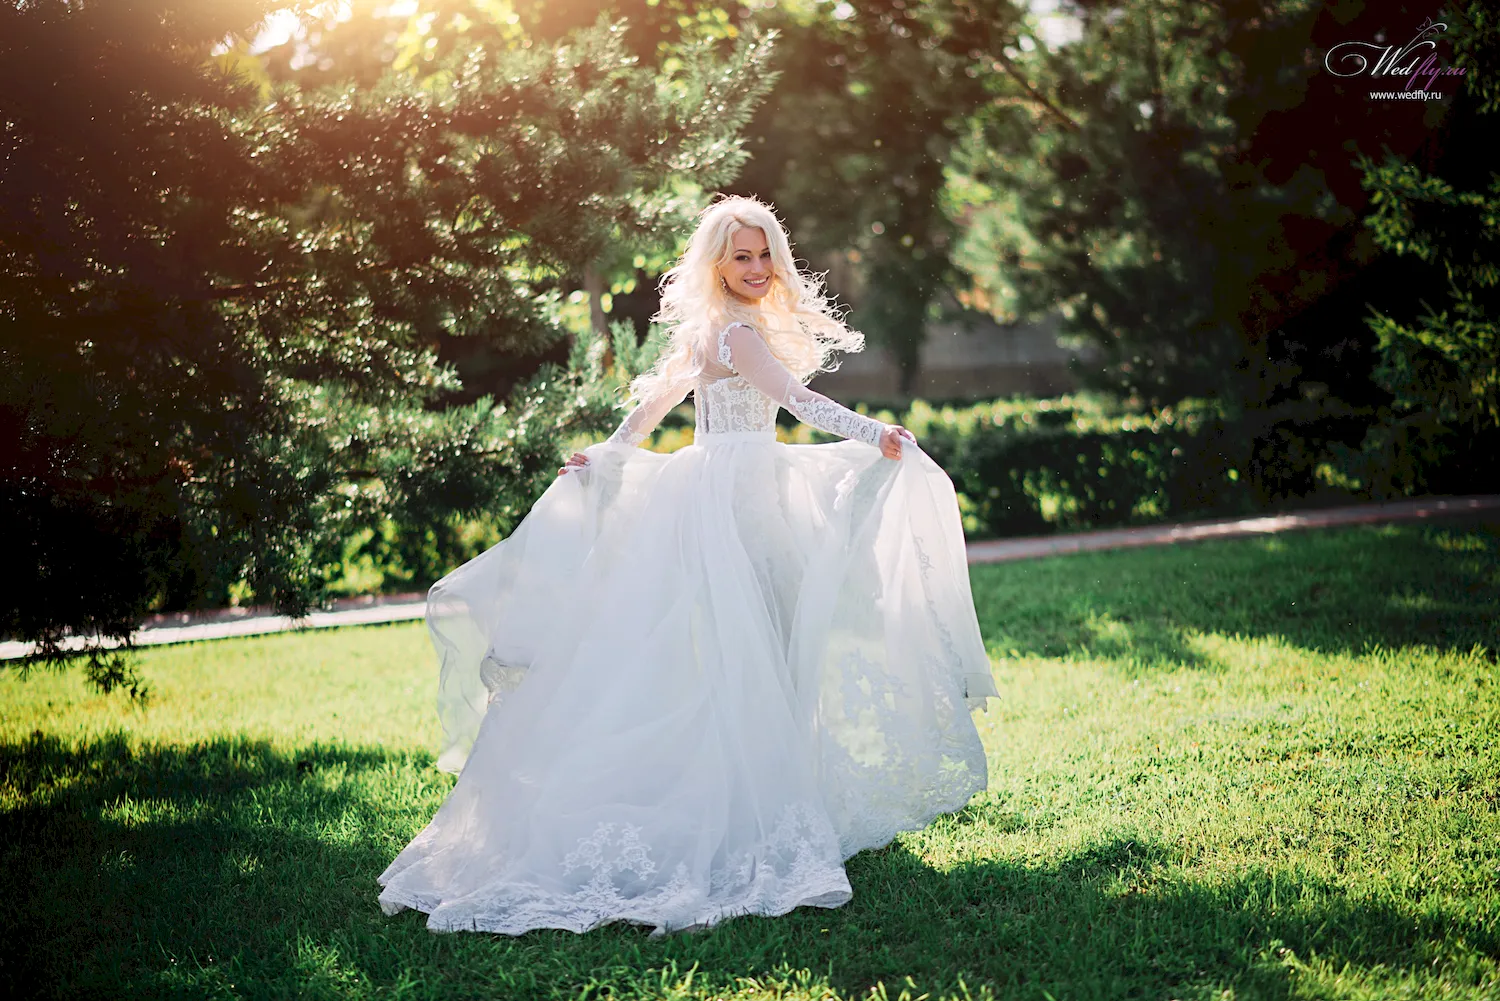 Свадебный образ невесты в пышном платье